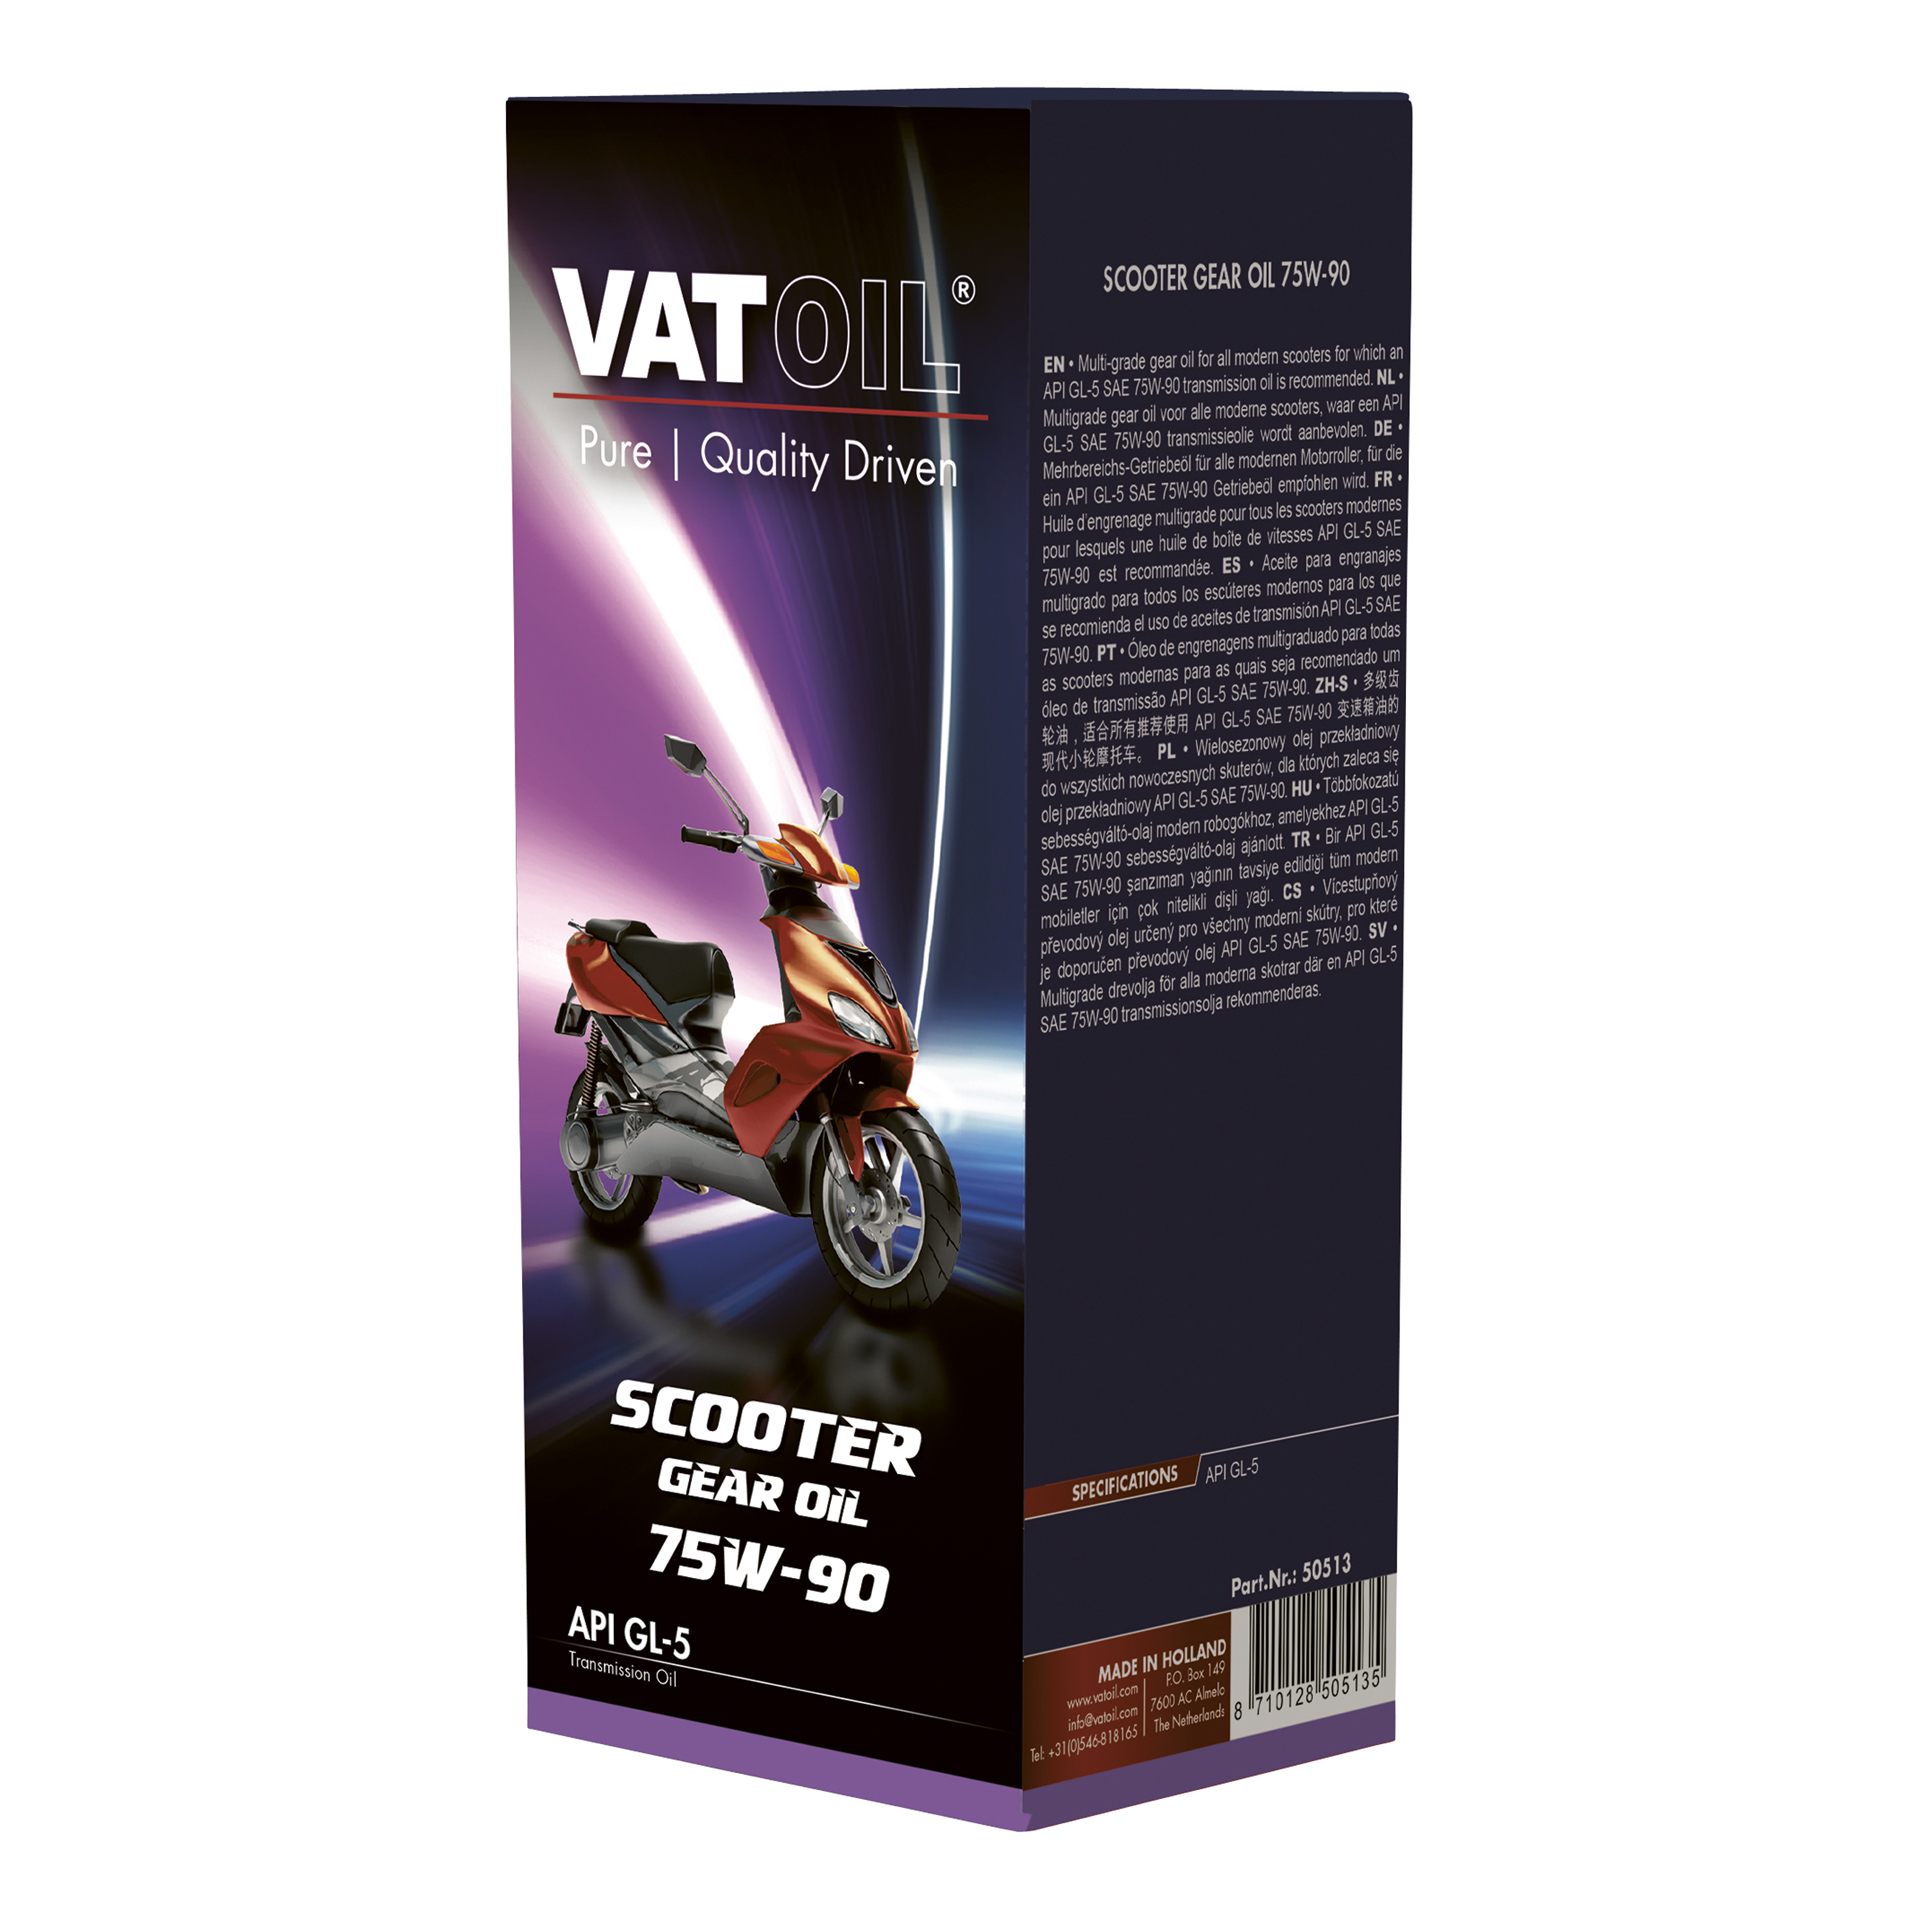 VatOil Scooter GearOil 75W-90 125ml (1865001)